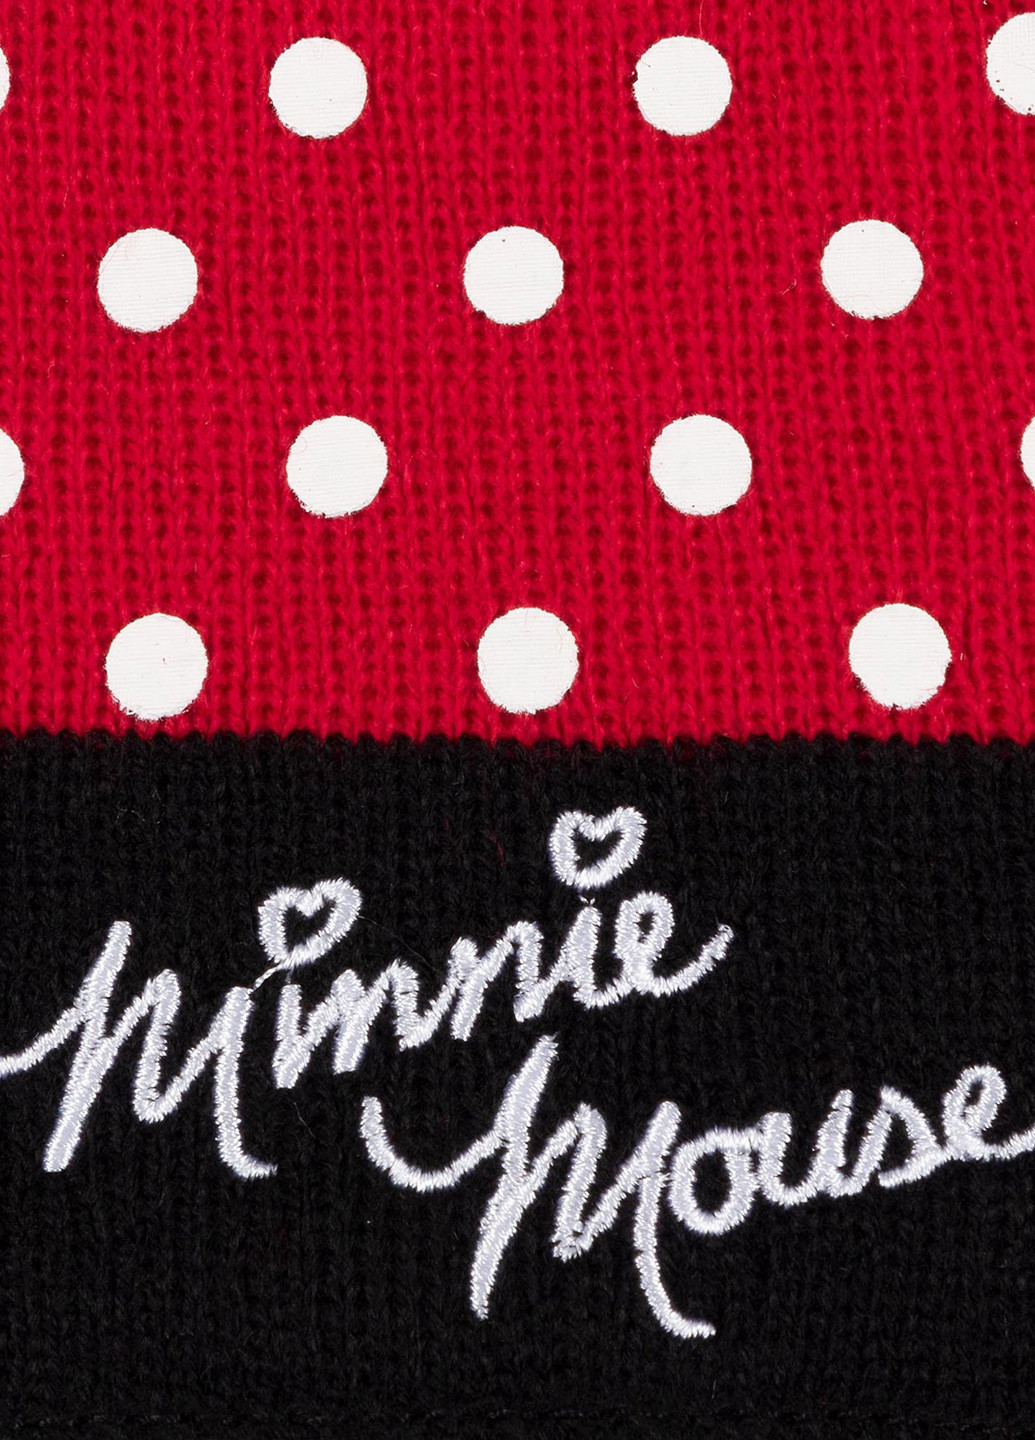 Комплект дитячий ACCCS-AW19-11DSTC Mickey&Friends шапка + шарф + рукавиці горошок червоні кежуали акрил